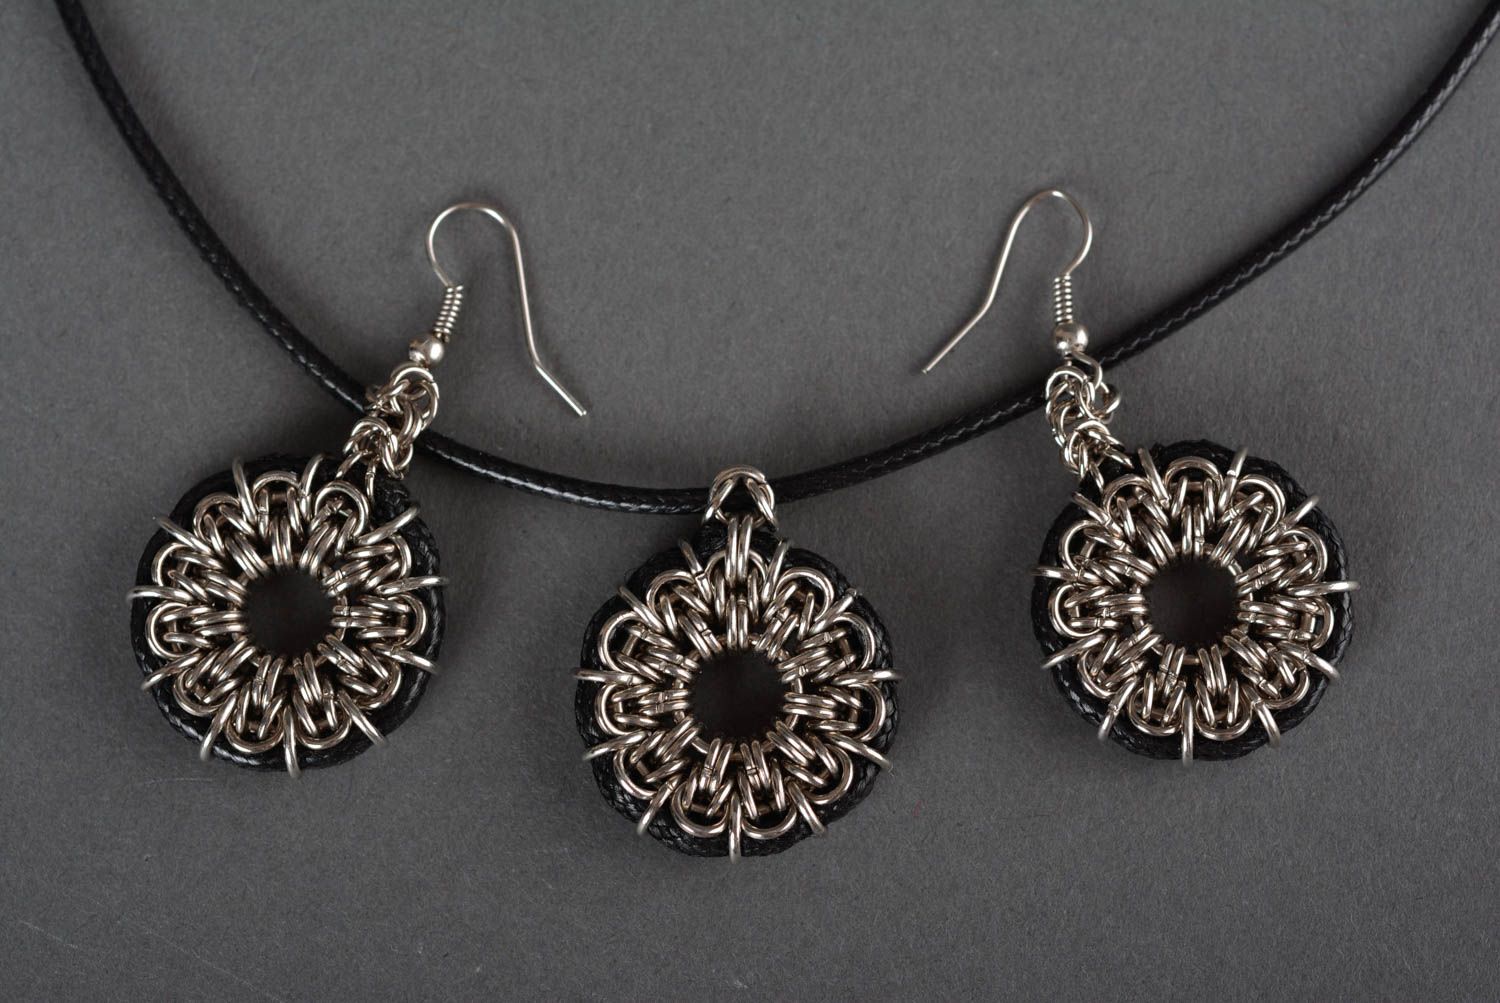 Handmade metal jewelry metal earrings metal pendant handmade accessories photo 2